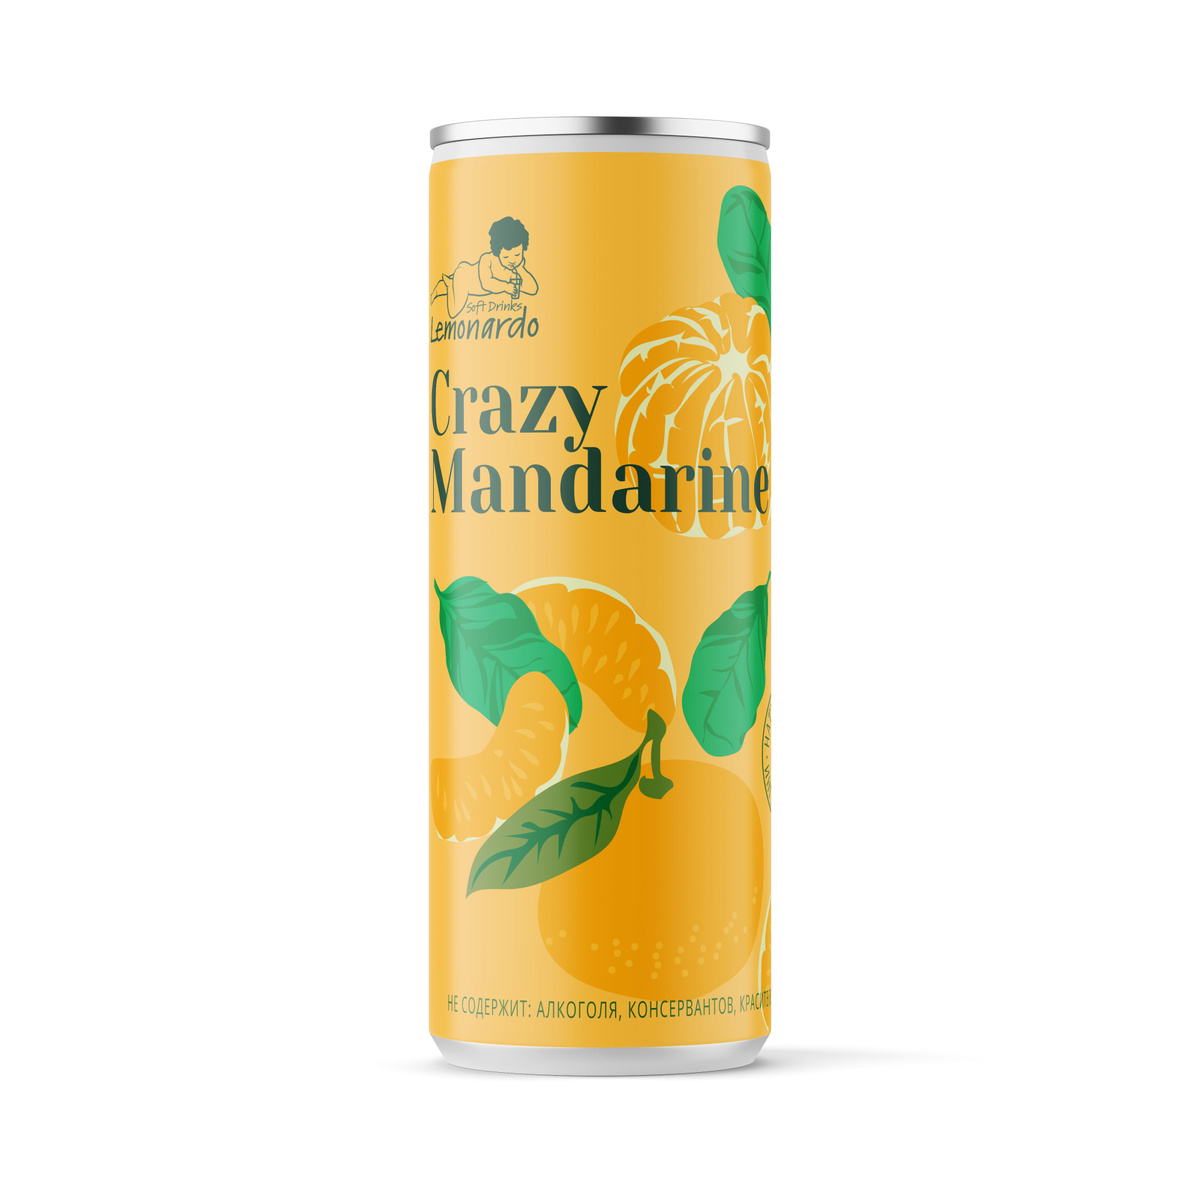 Мандариновый лимонад с базиликом/ Lemonardo Crazy Mandarine